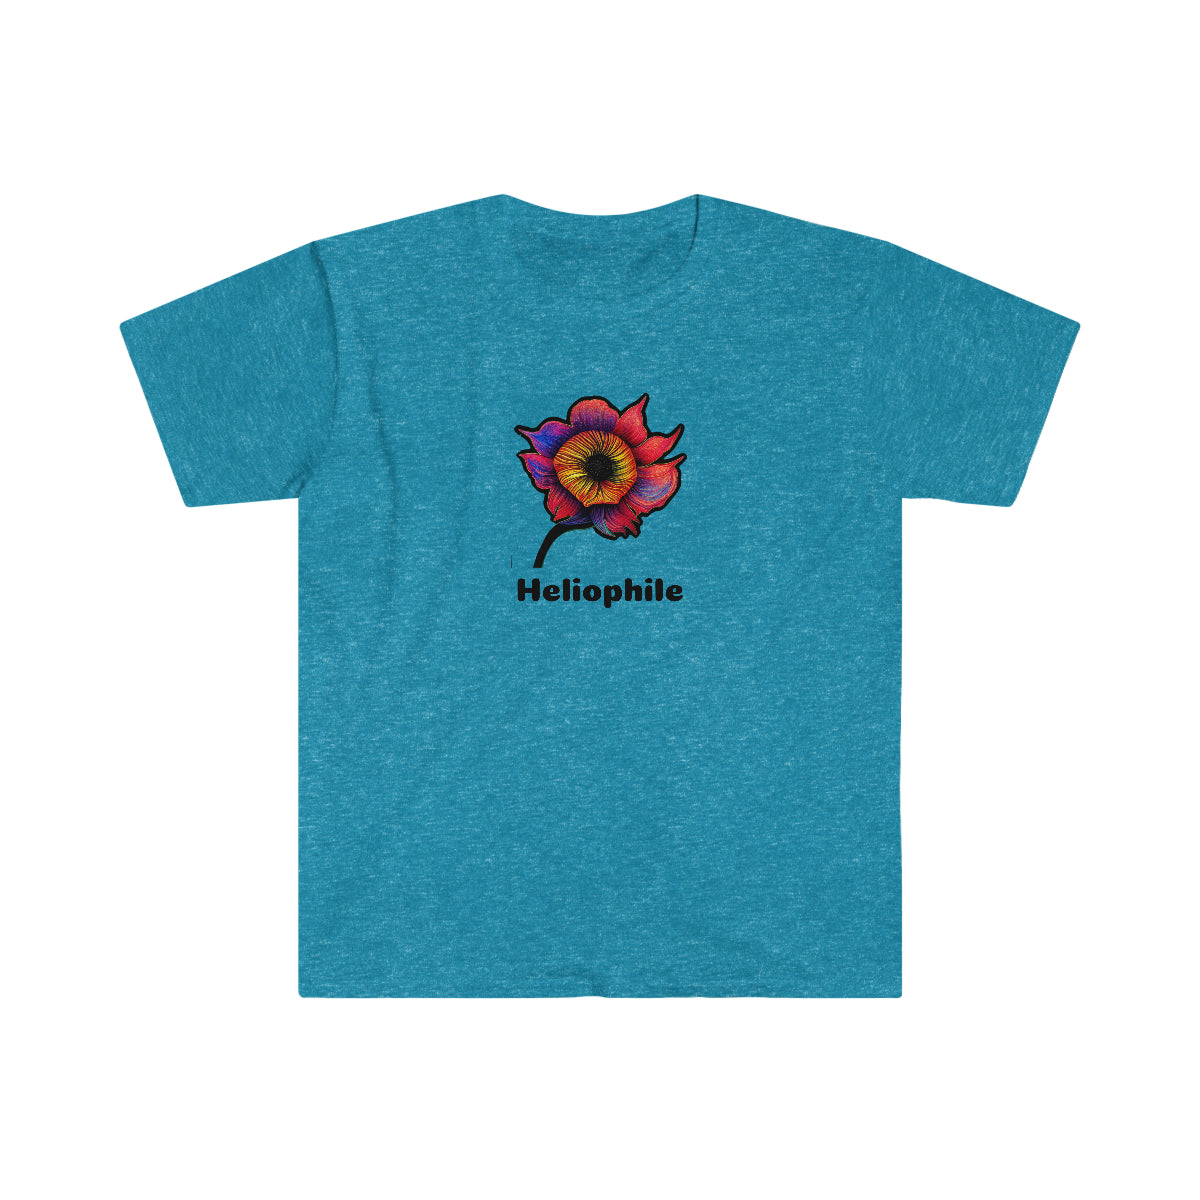 Heliophile - Unisex Softstyle T-Shirt